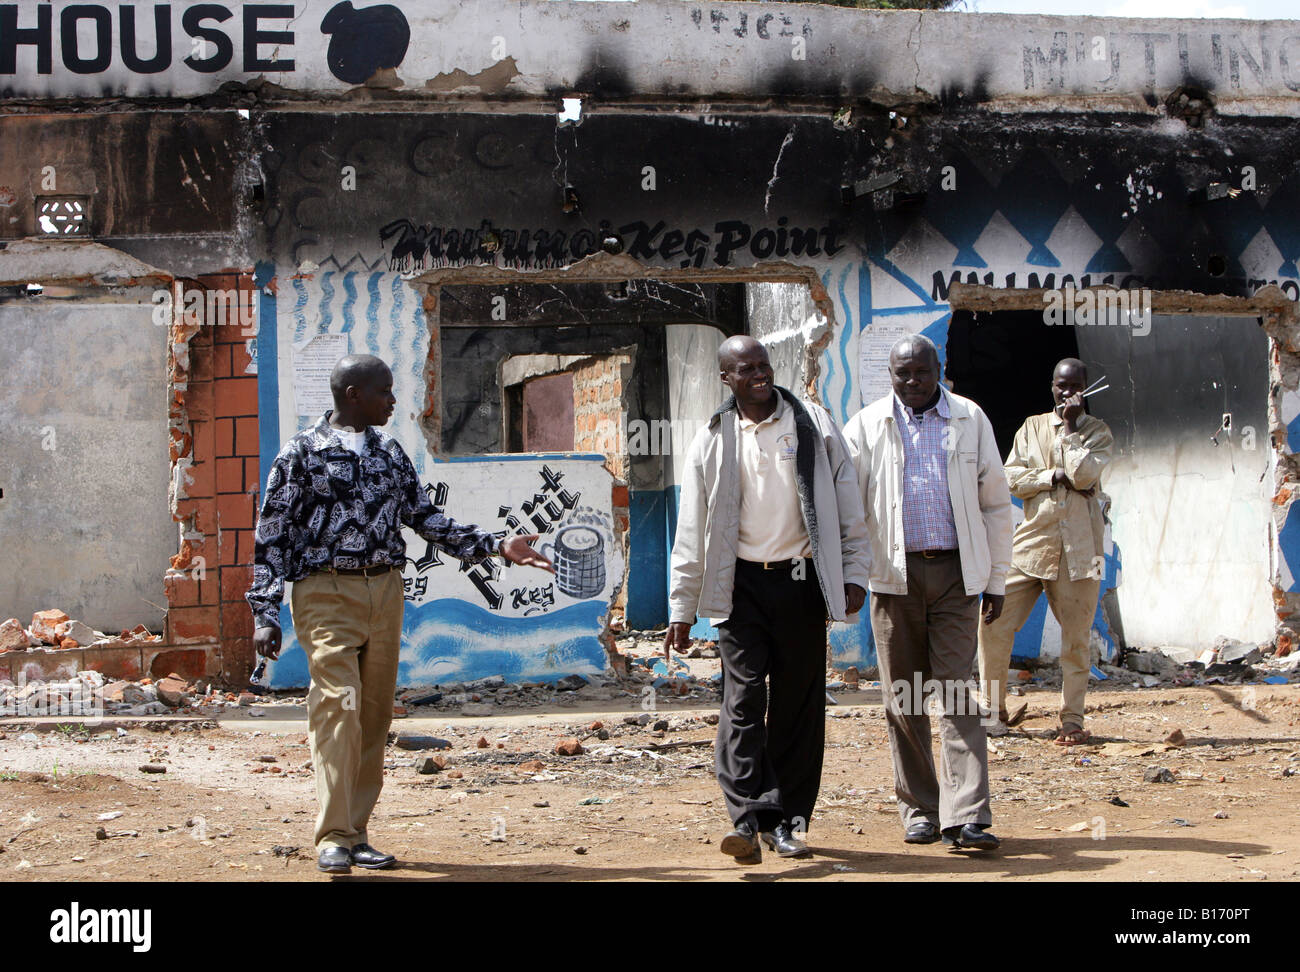 Kenya : maison brûlée d'Eldoret, détruit au cours de la violence post-électorale en janvier 2008 Banque D'Images